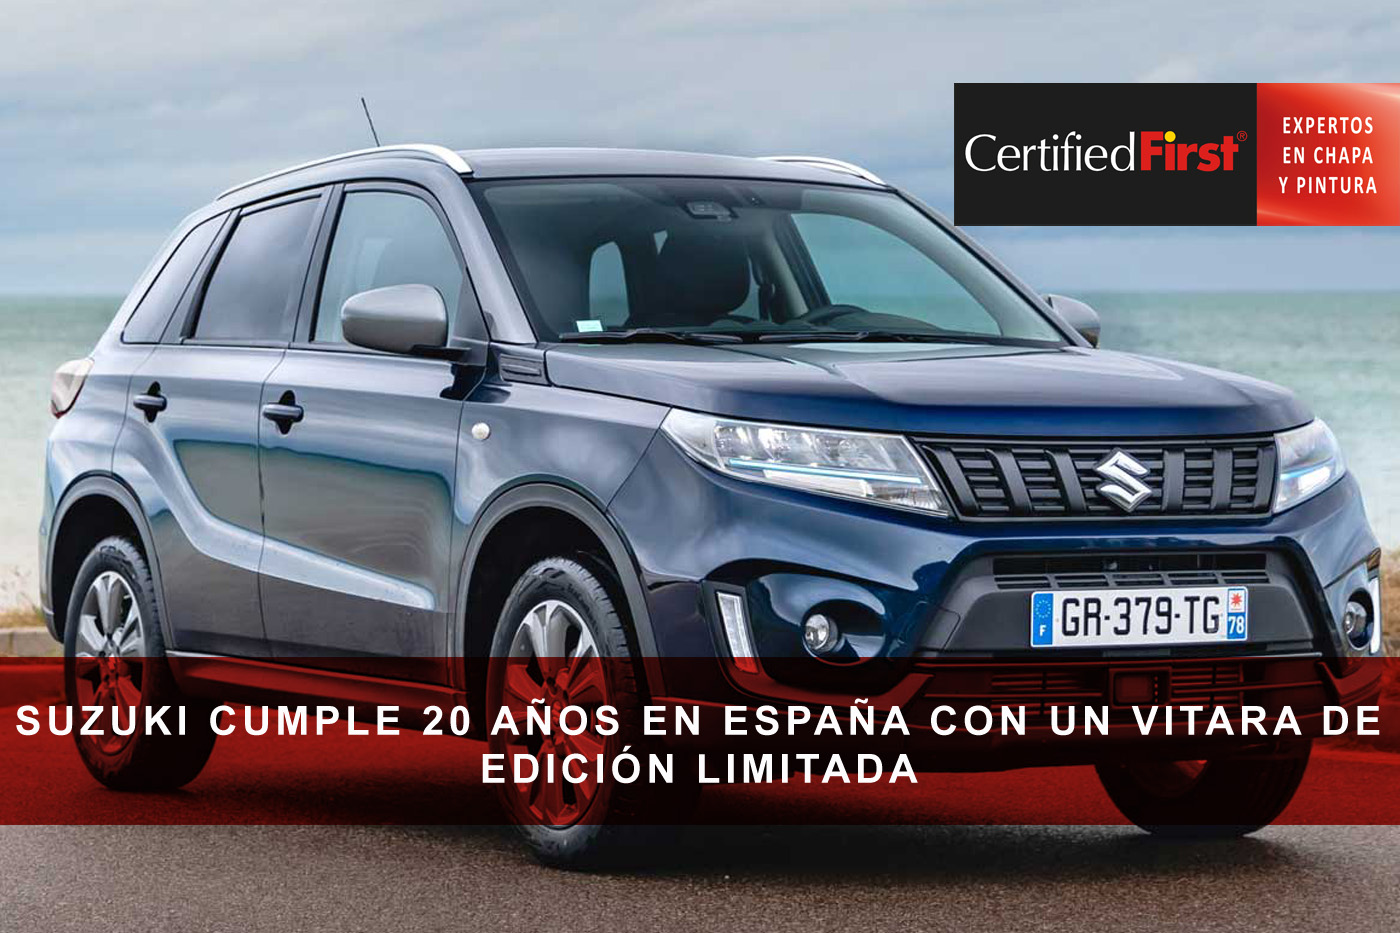 Suzuki cumple 20 años en España con un Vitara de edición limitada